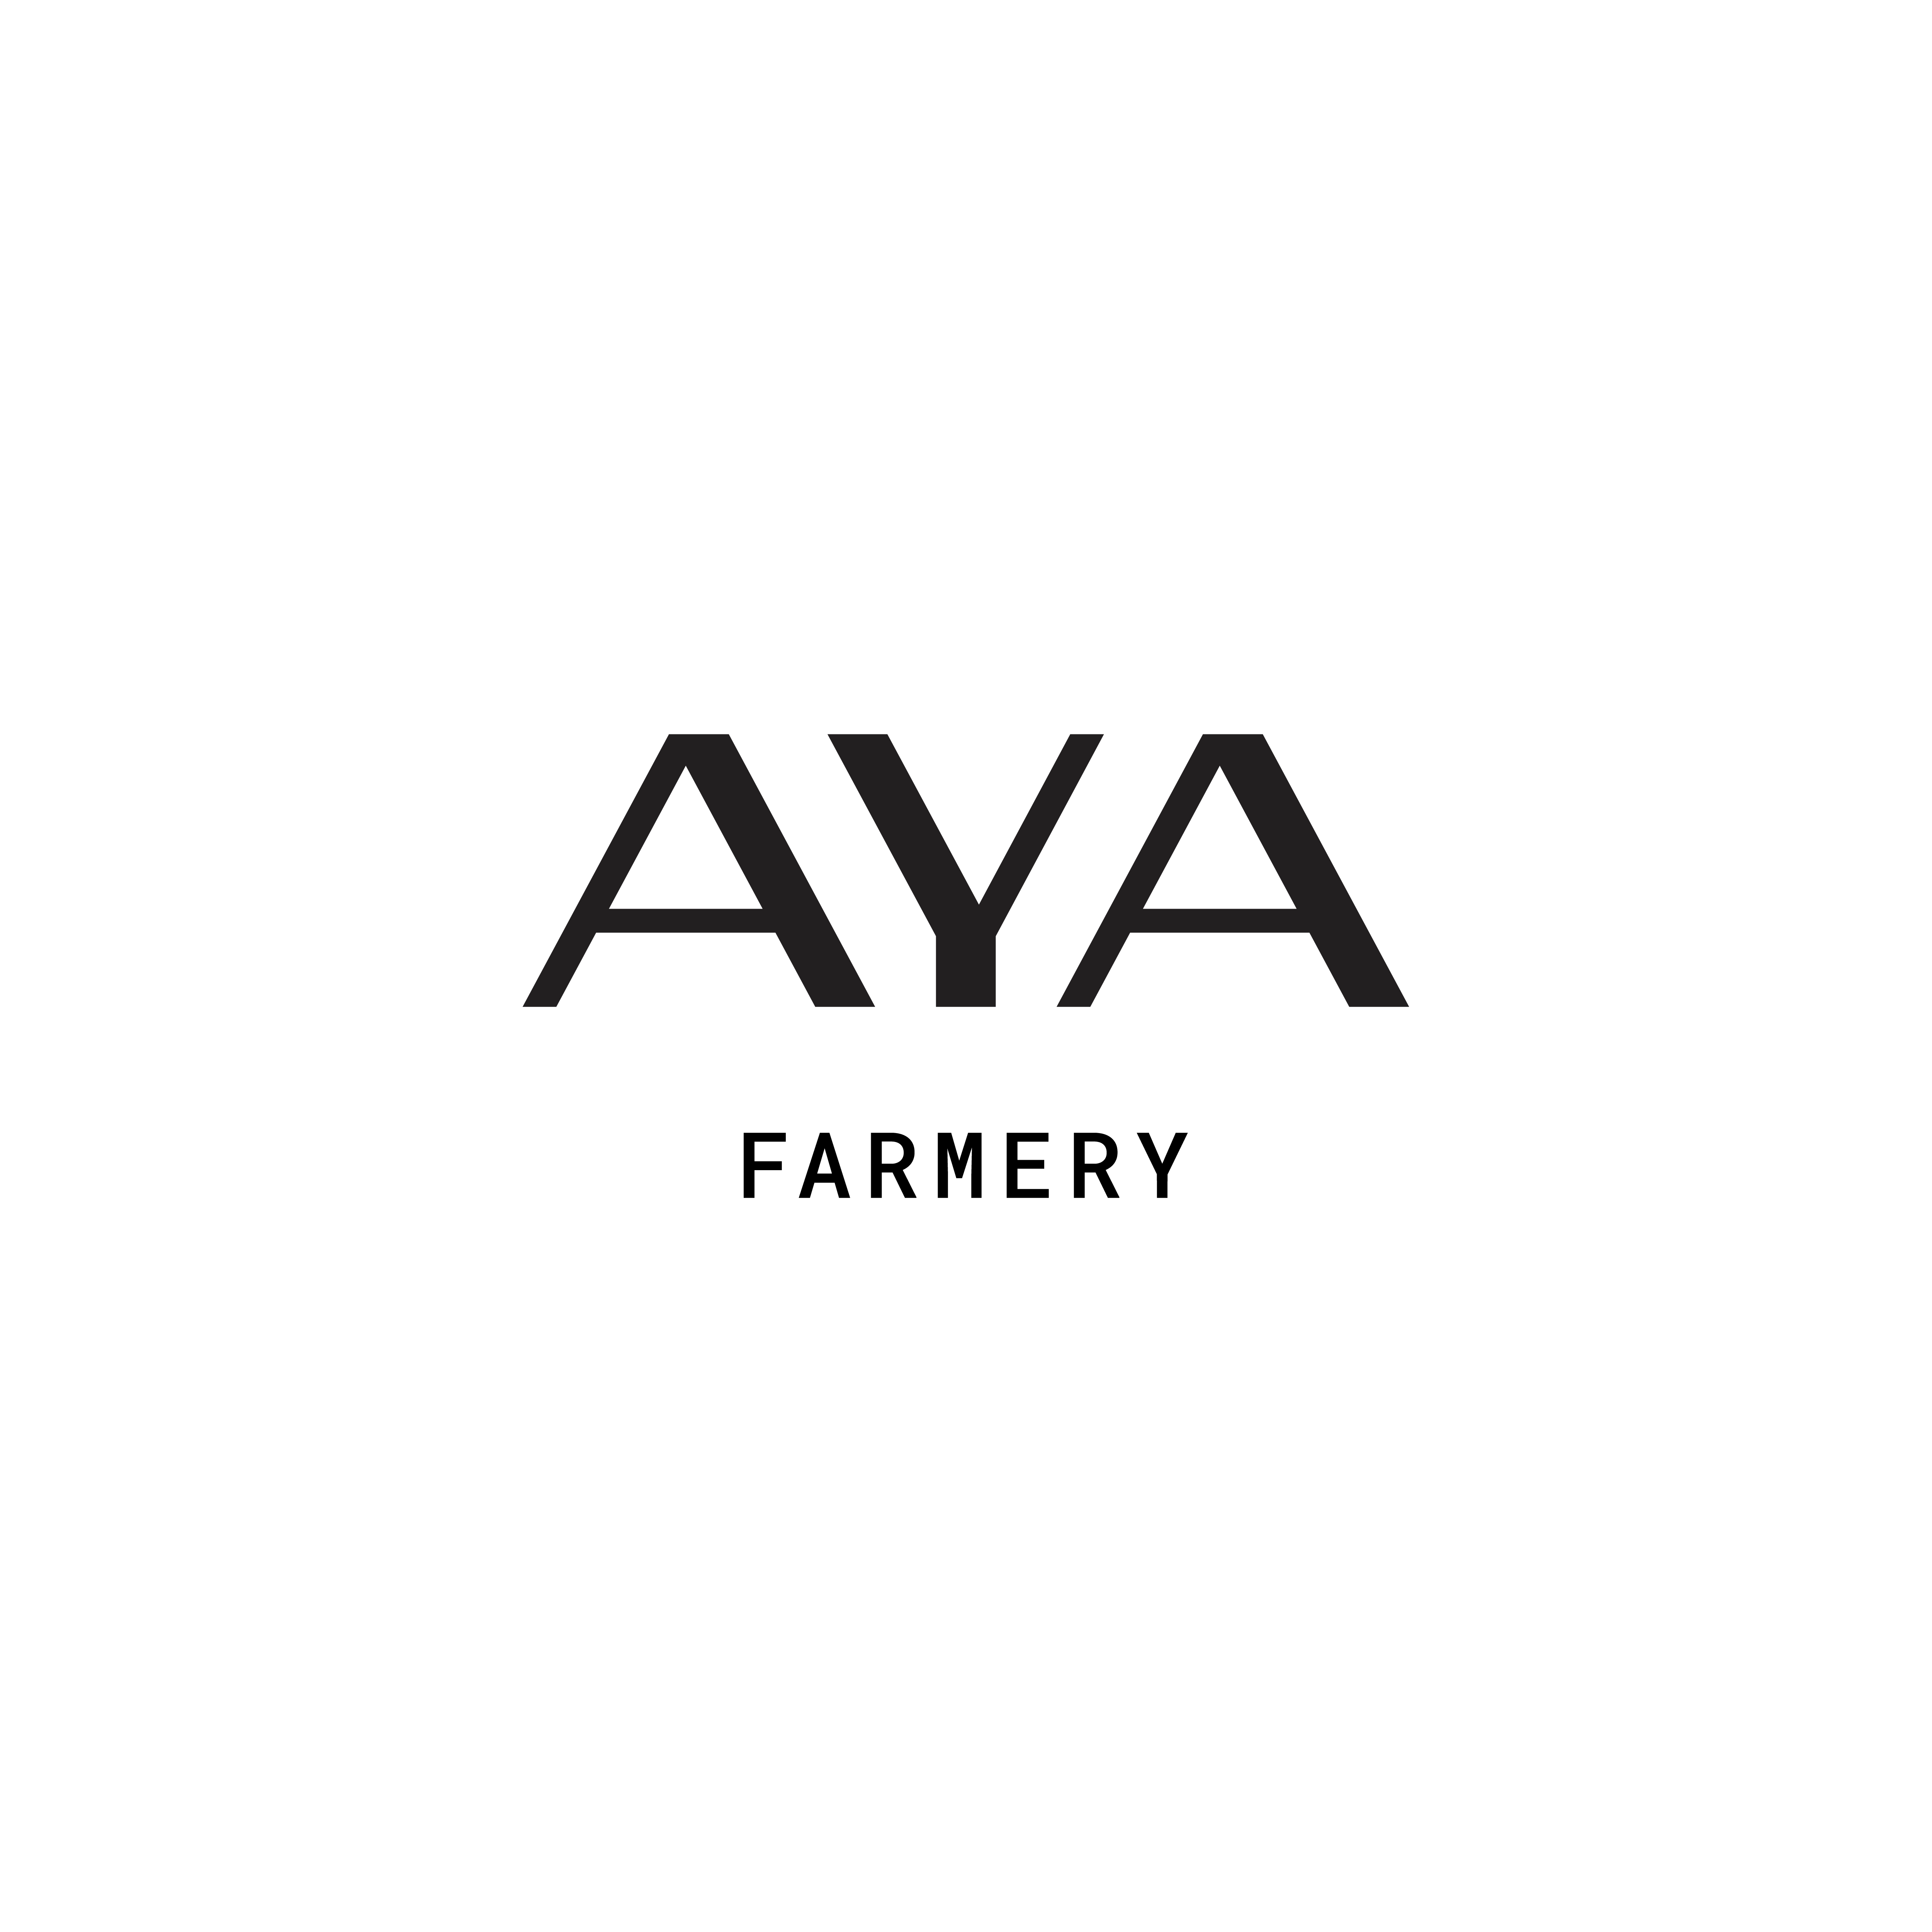 AYA Farmery Logo black